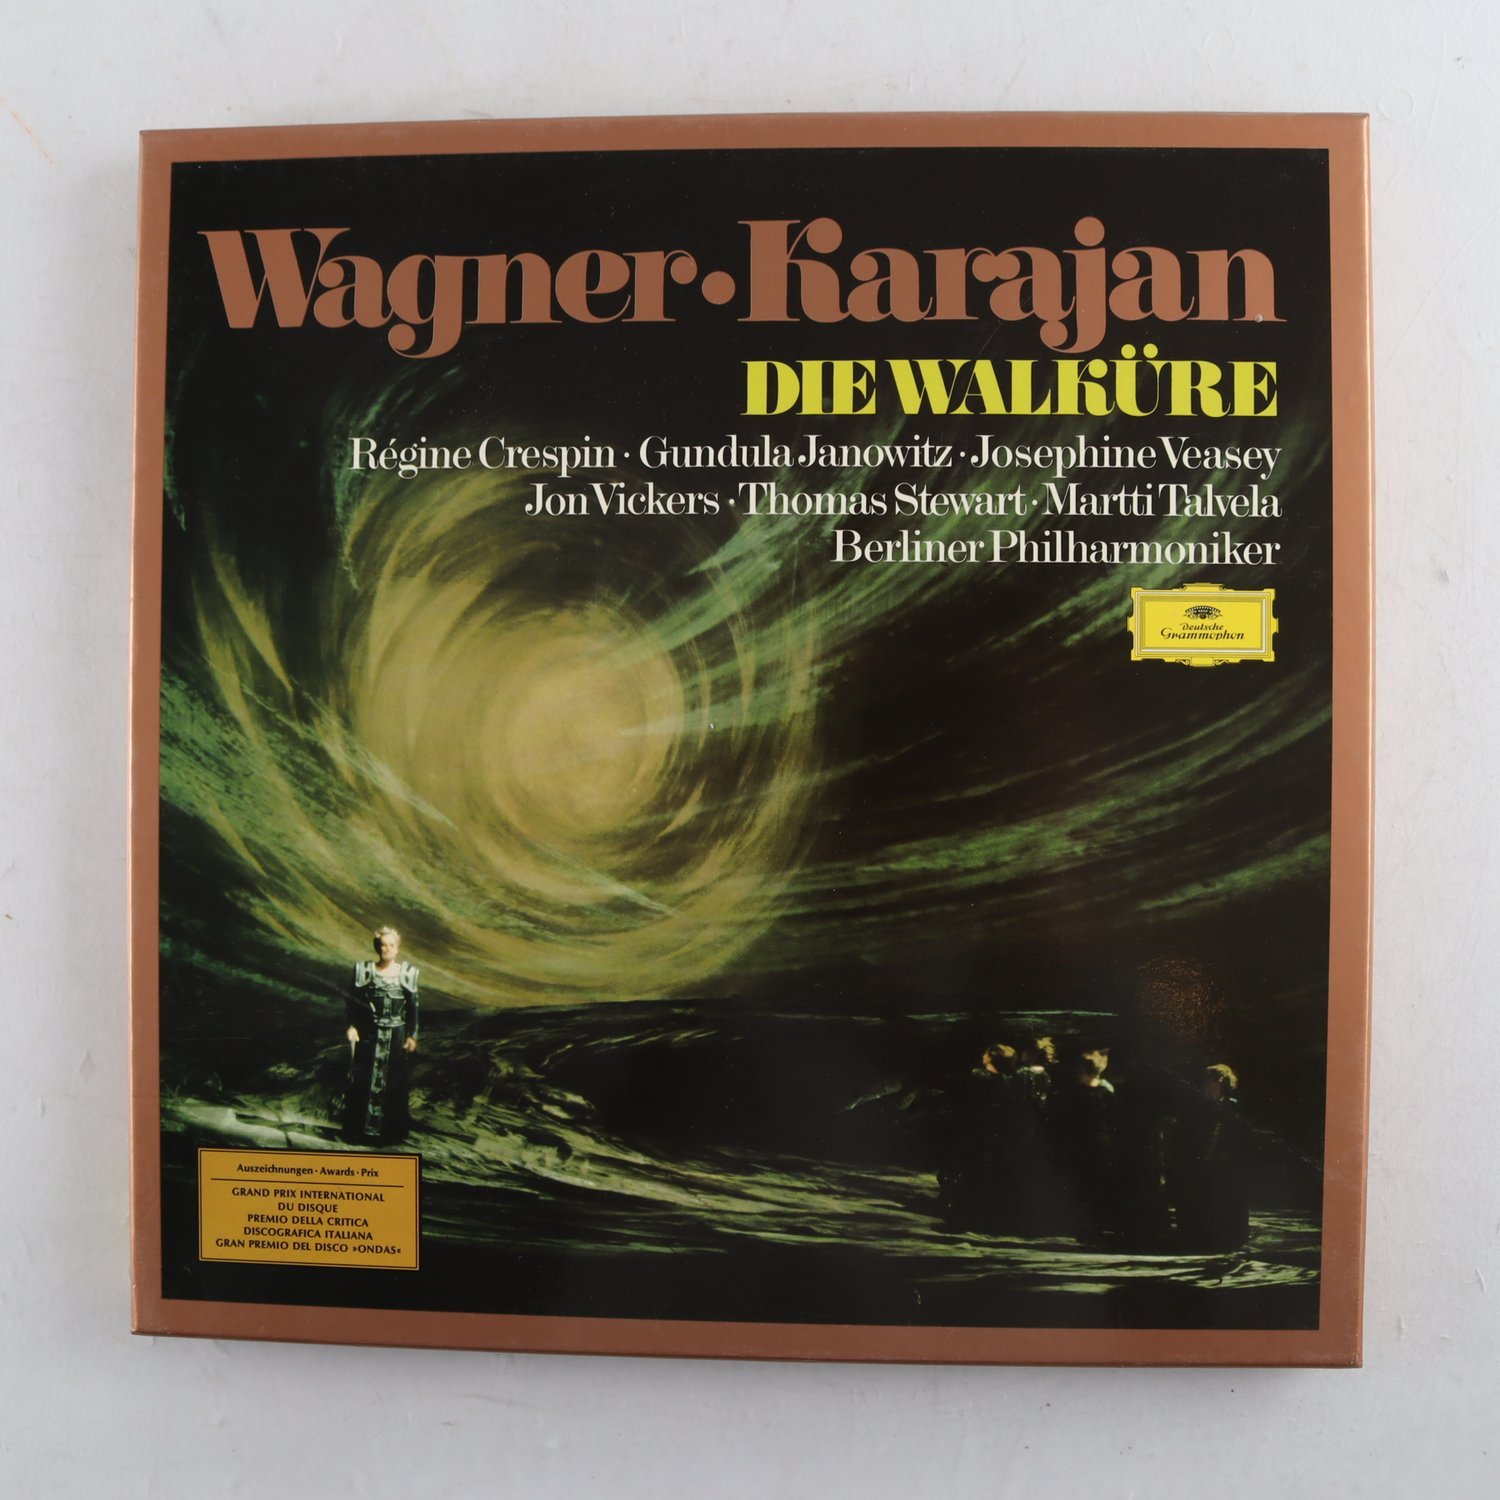 LP Wagner, Karajan, Die Walküre